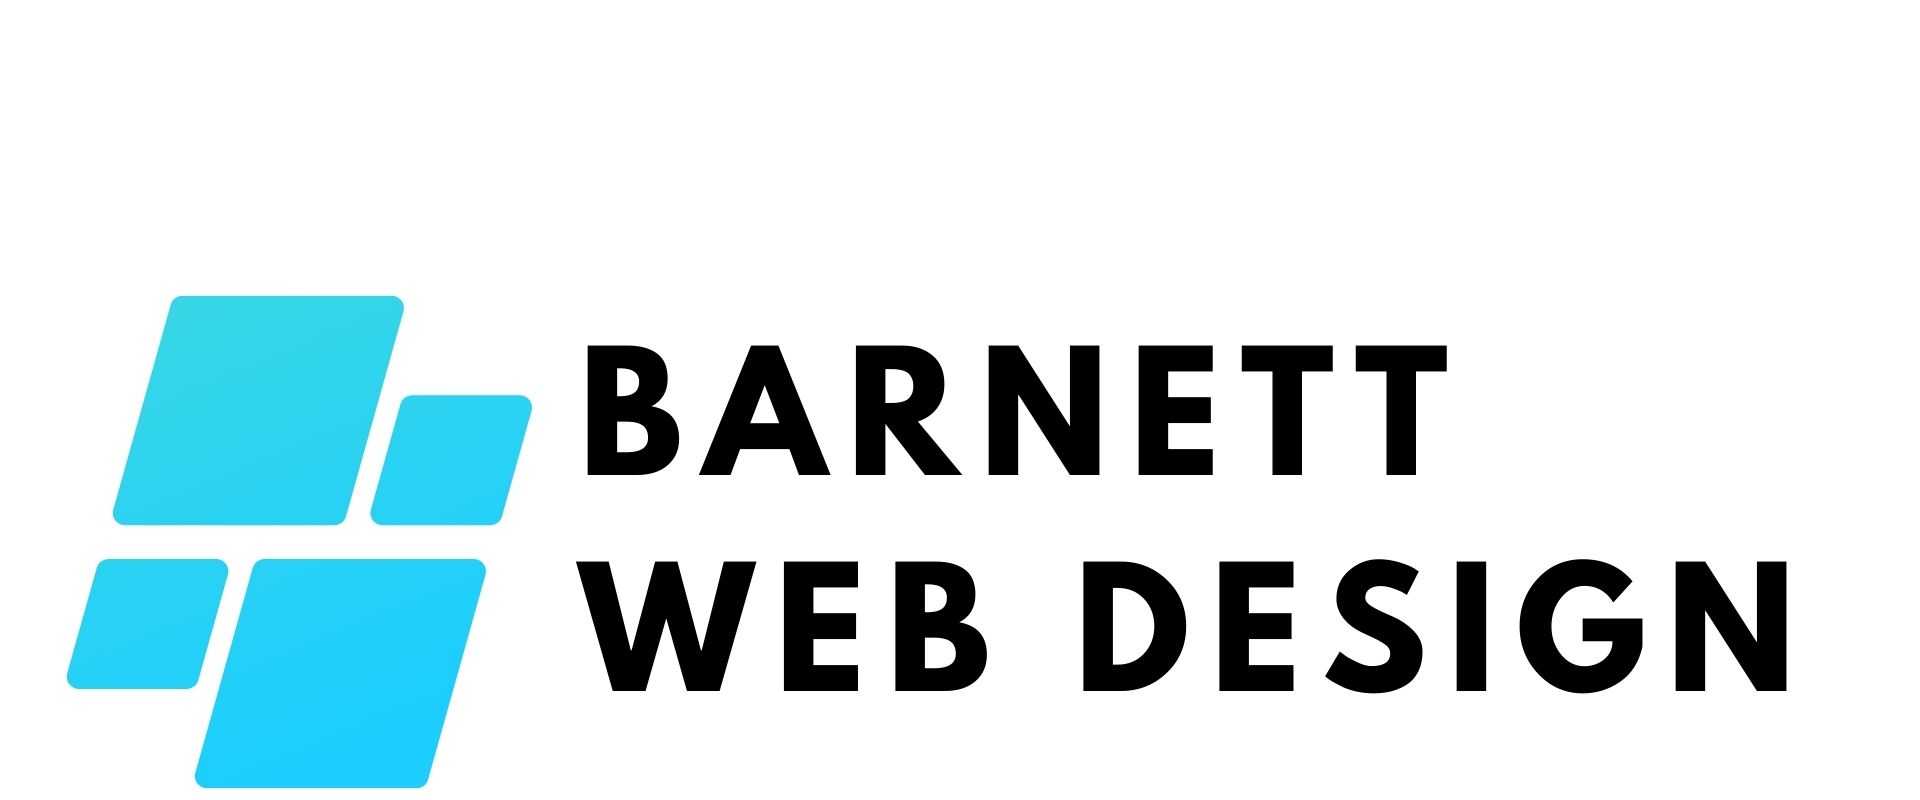 Barnett Web Design